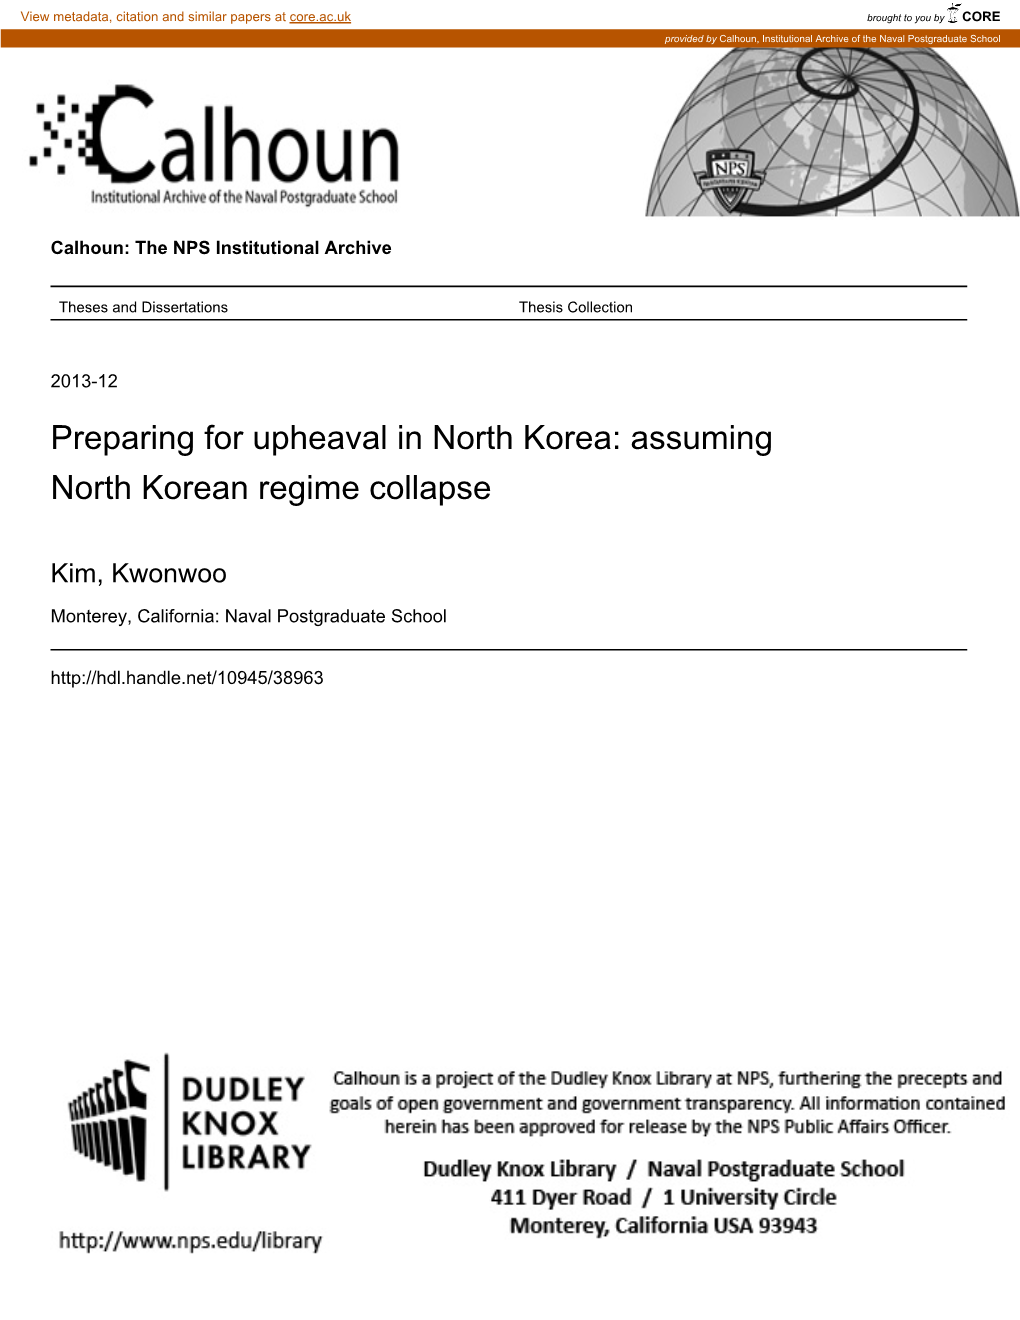 Preparing for Upheaval in North Korea: Assuming North Korean Regime Collapse